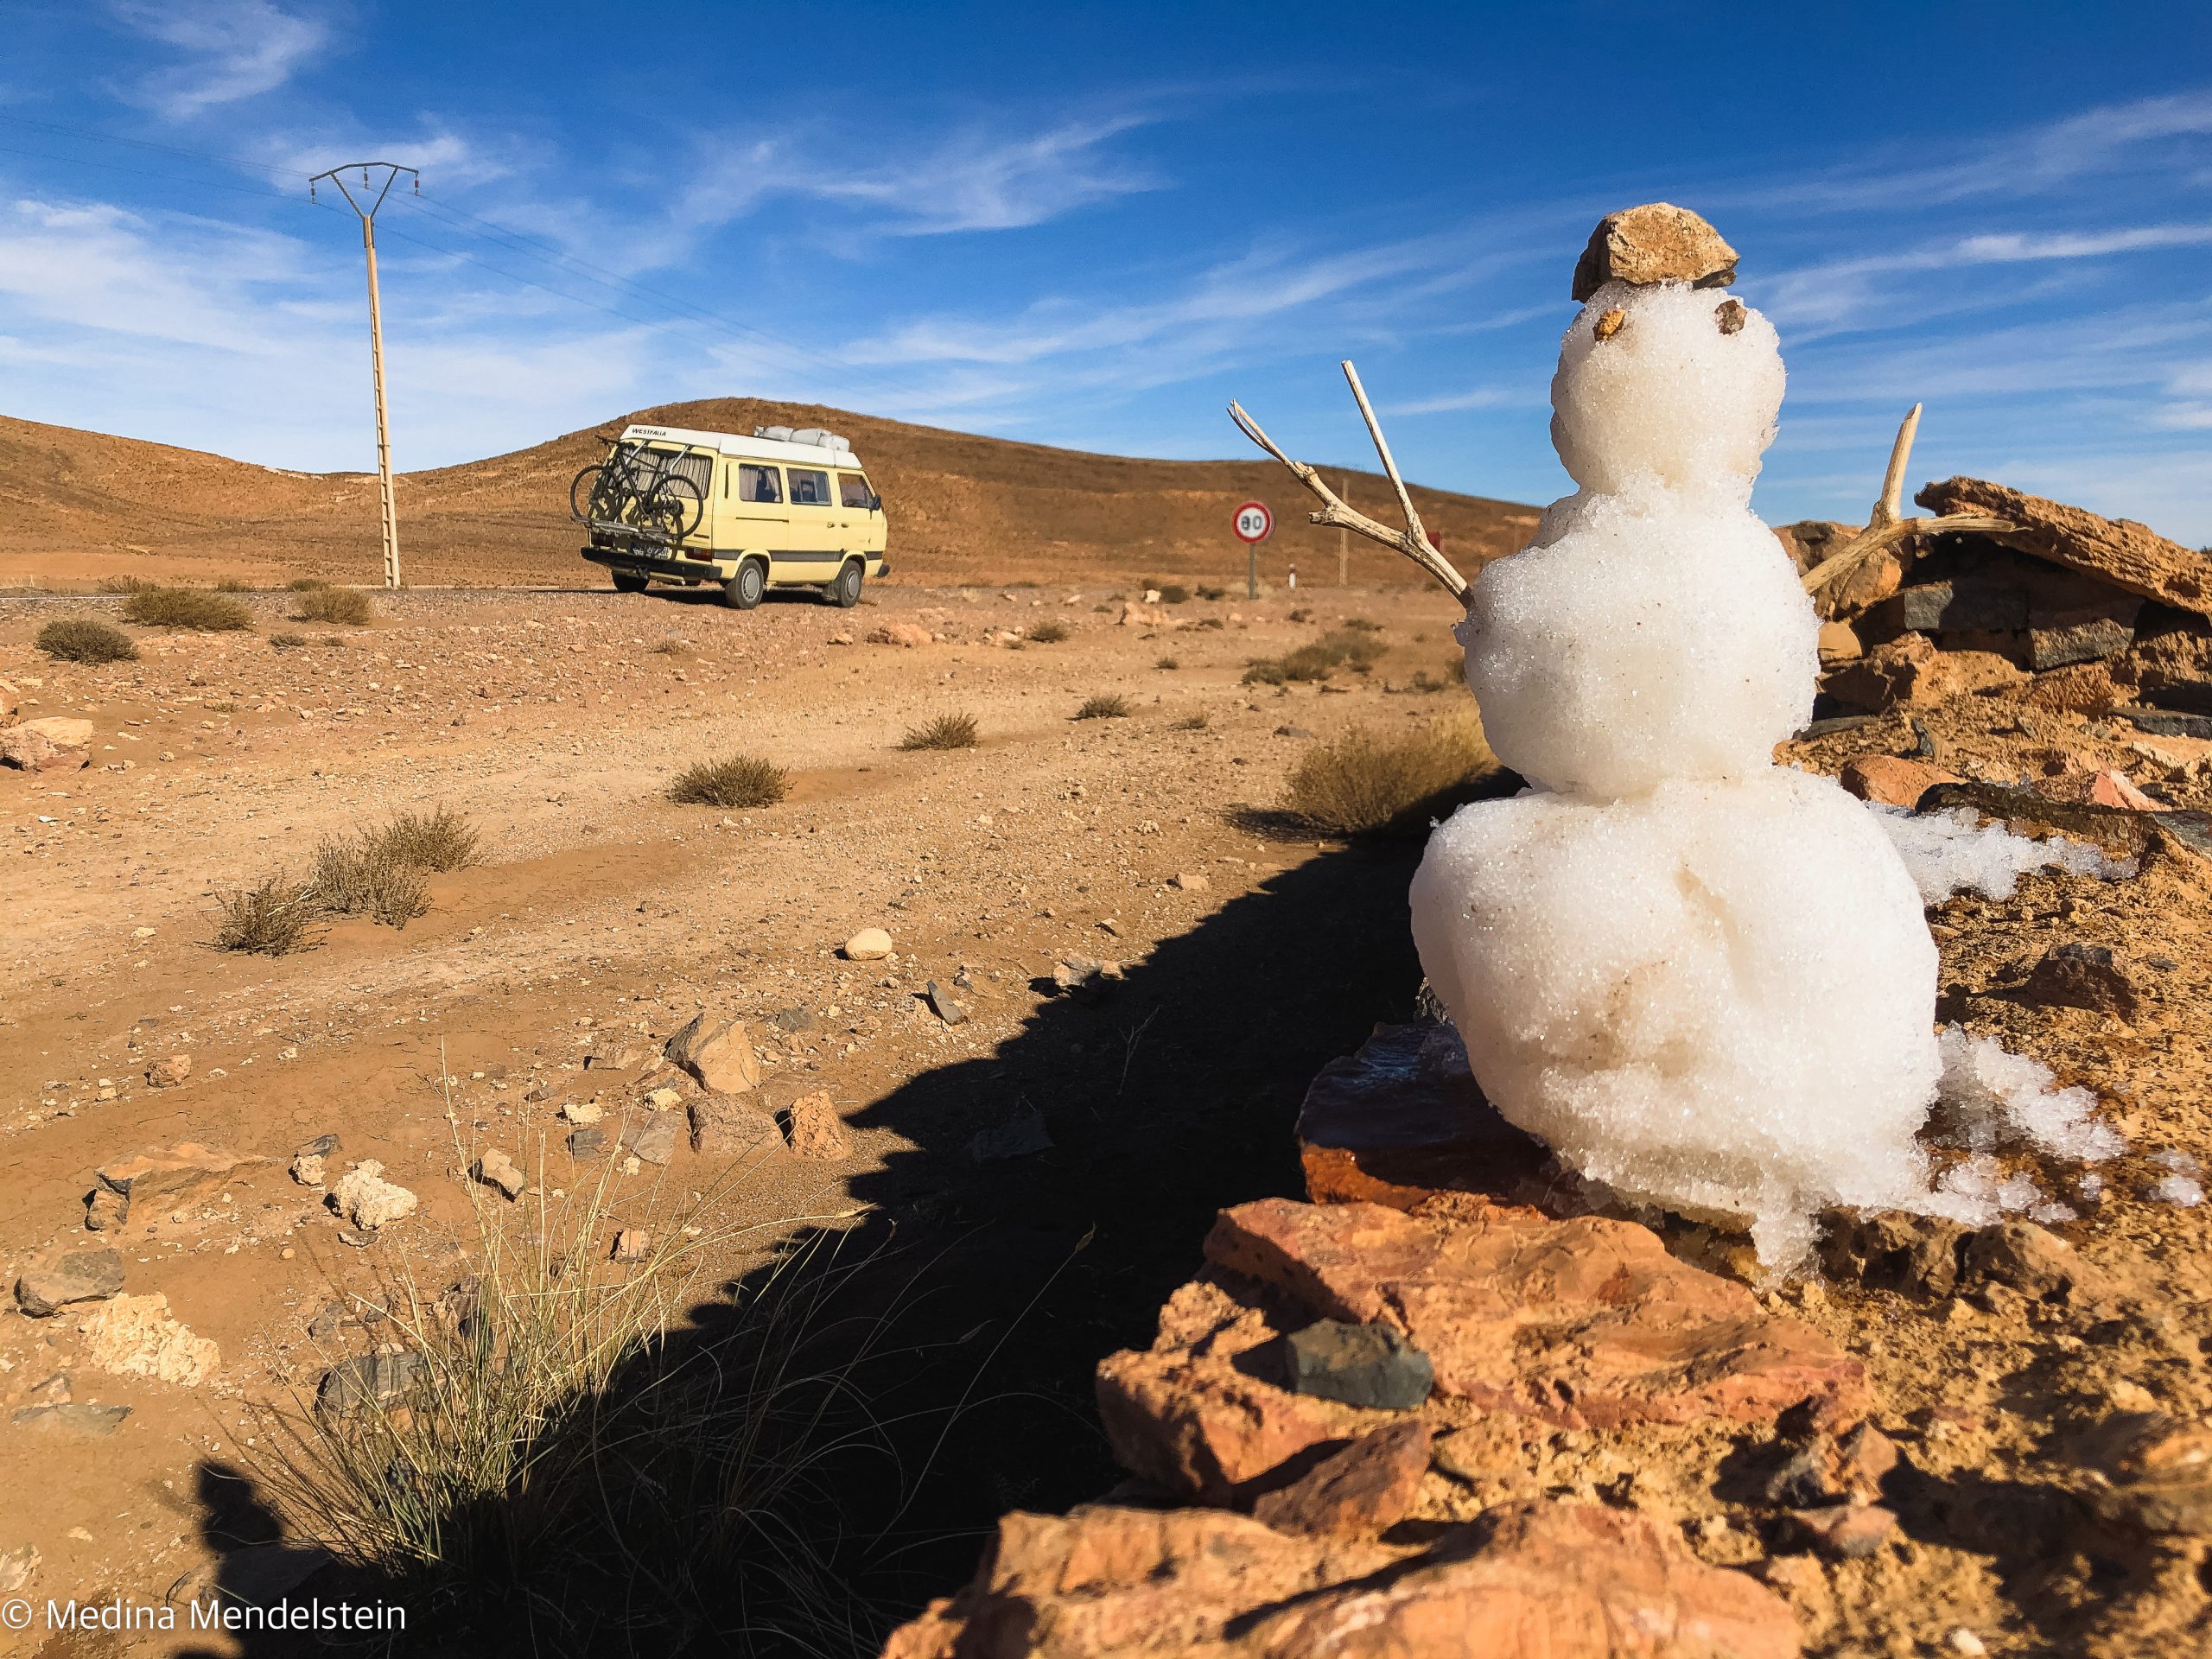 Camping Marokko im Atlasgebirge: Im Vordergrund ein Schneemann auf einer Mauer. Im Hintergrund Wüste und das Atlasgebirge. Auf der Straße steht ein VW T3 Wohnmobil.